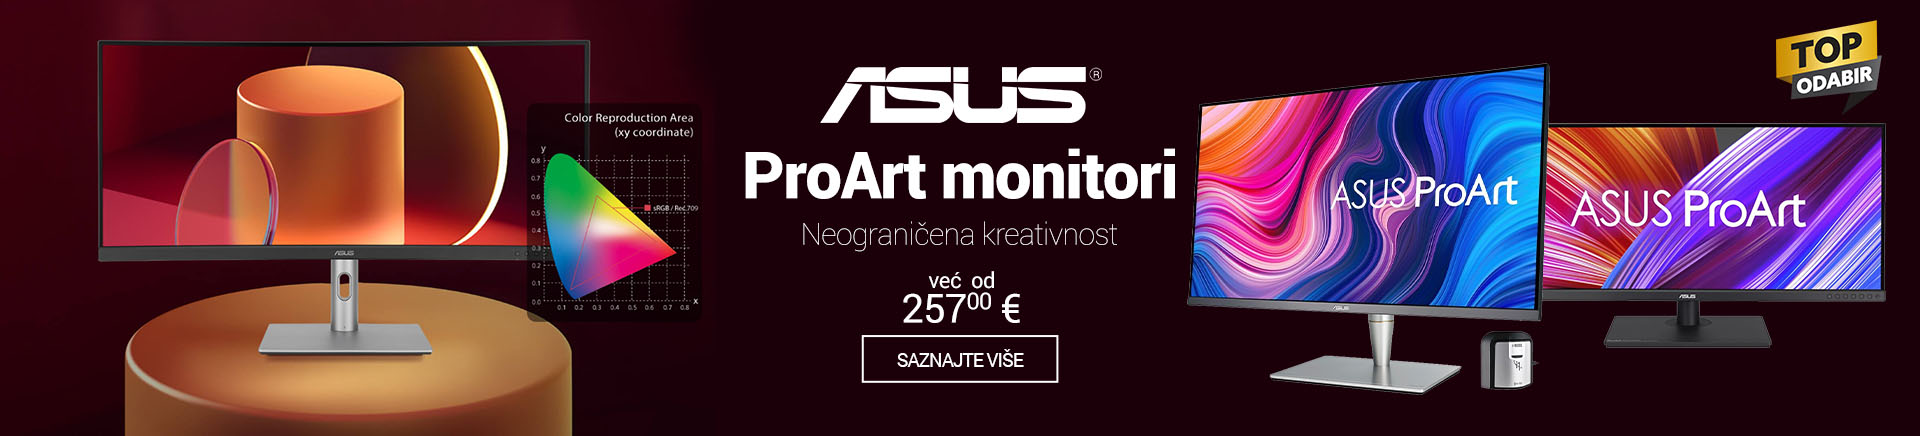 HR ASUS ProArt monitori MOBILE za APP 760x872.jpg